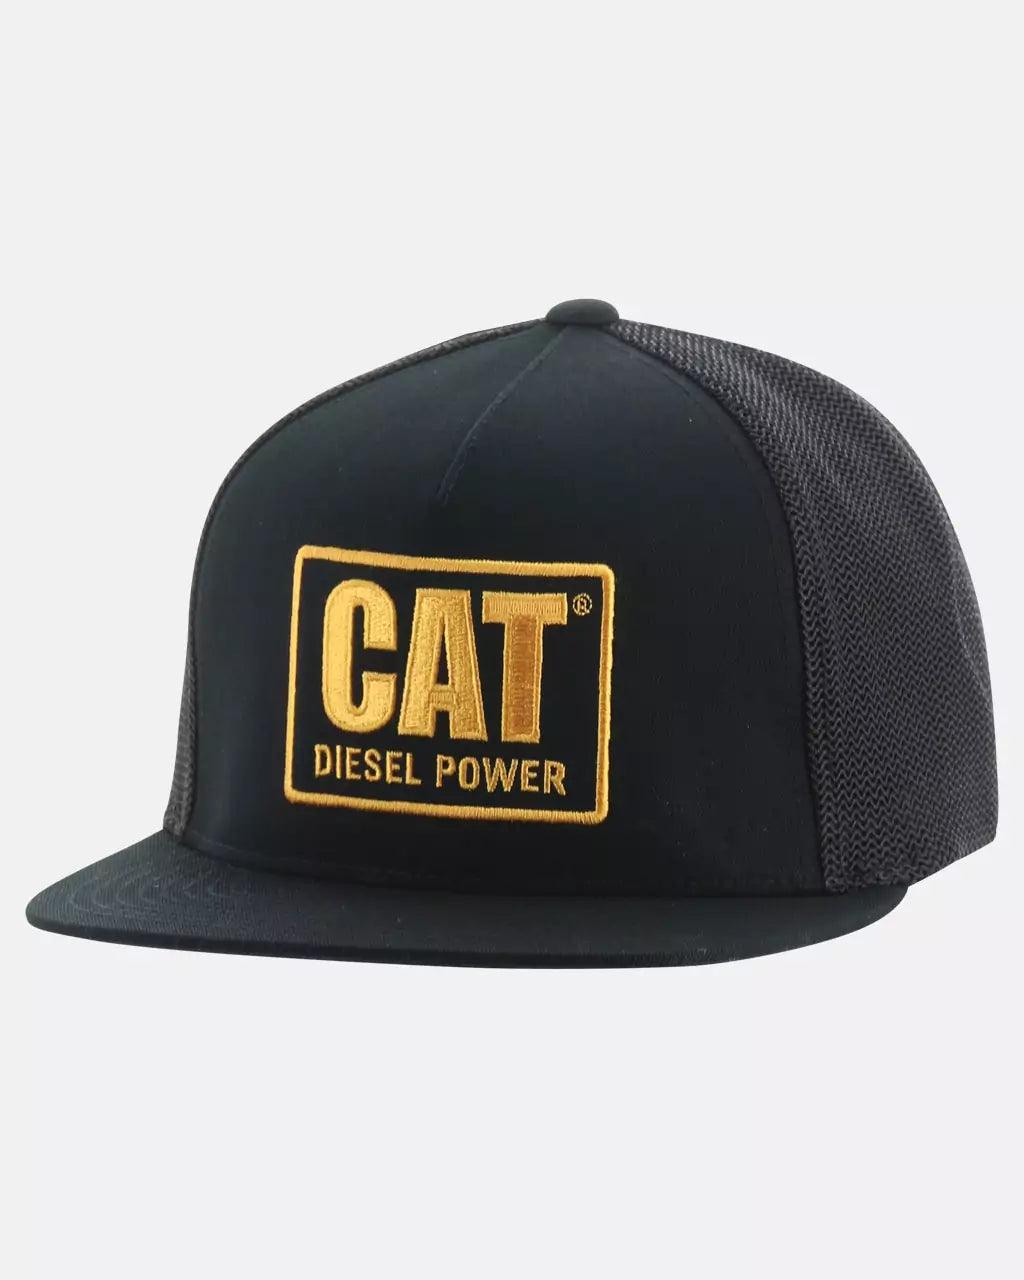 Men's Diesel Power Flexfit Trucker Hat - Black